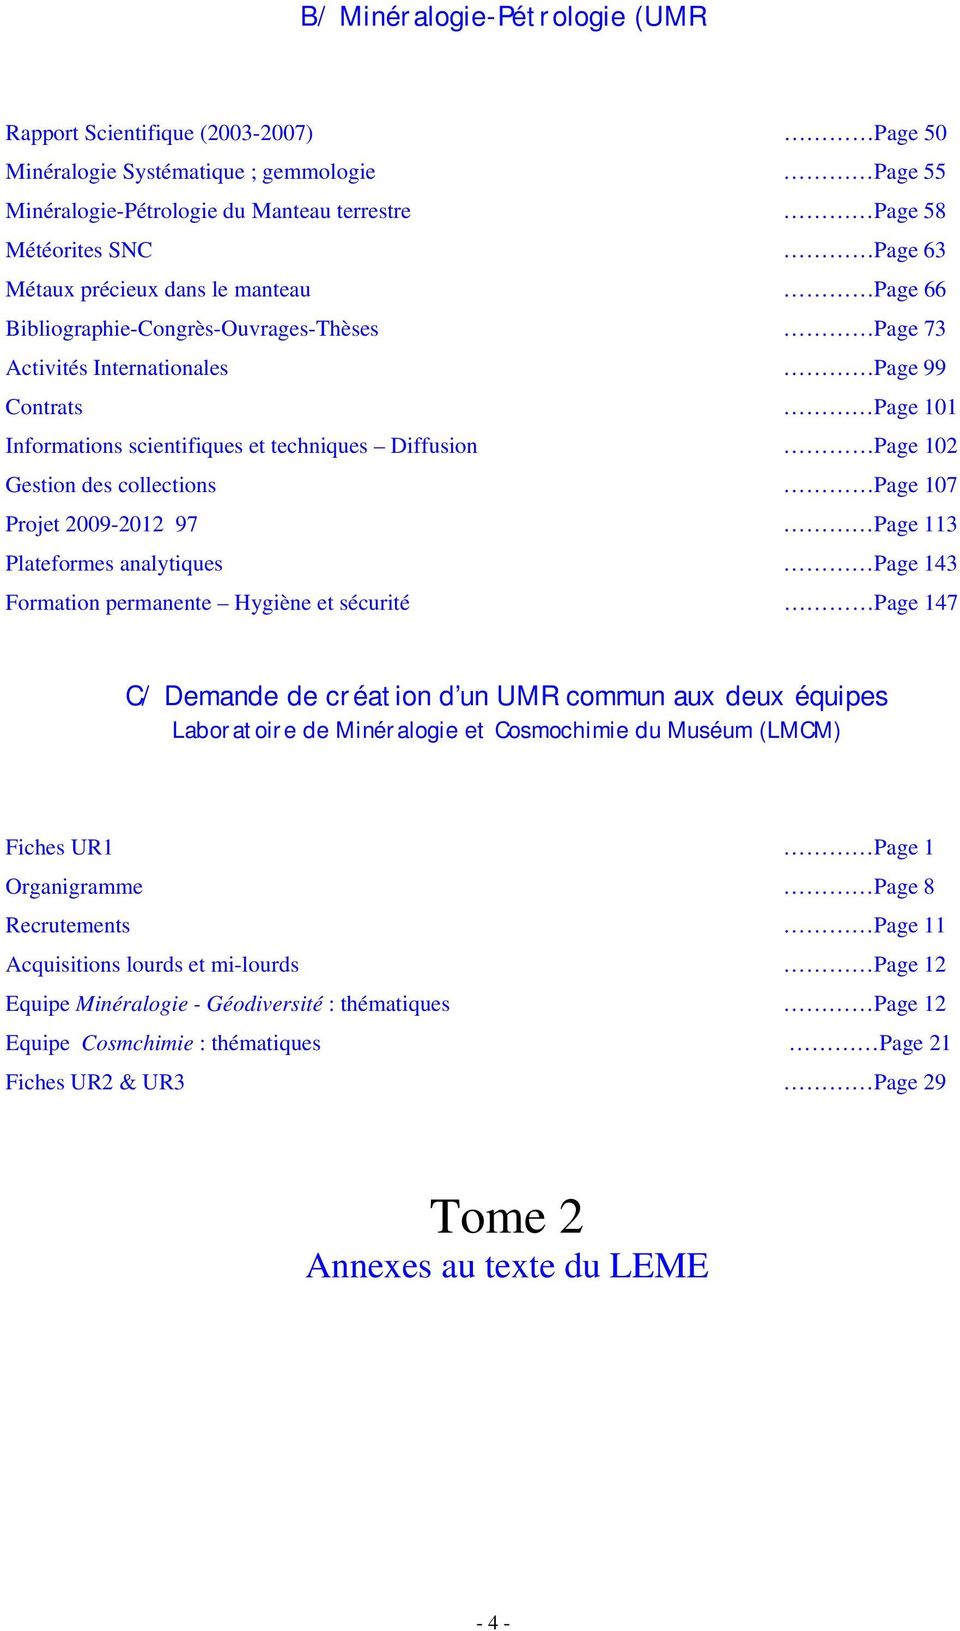 des collections Page 107 Projet 2009-2012 97 Page 113 Plateformes analytiques Page 143 Formation permanente Hygiène et sécurité Page 147 C/ Demande de création d un UMR commun aux deux équipes